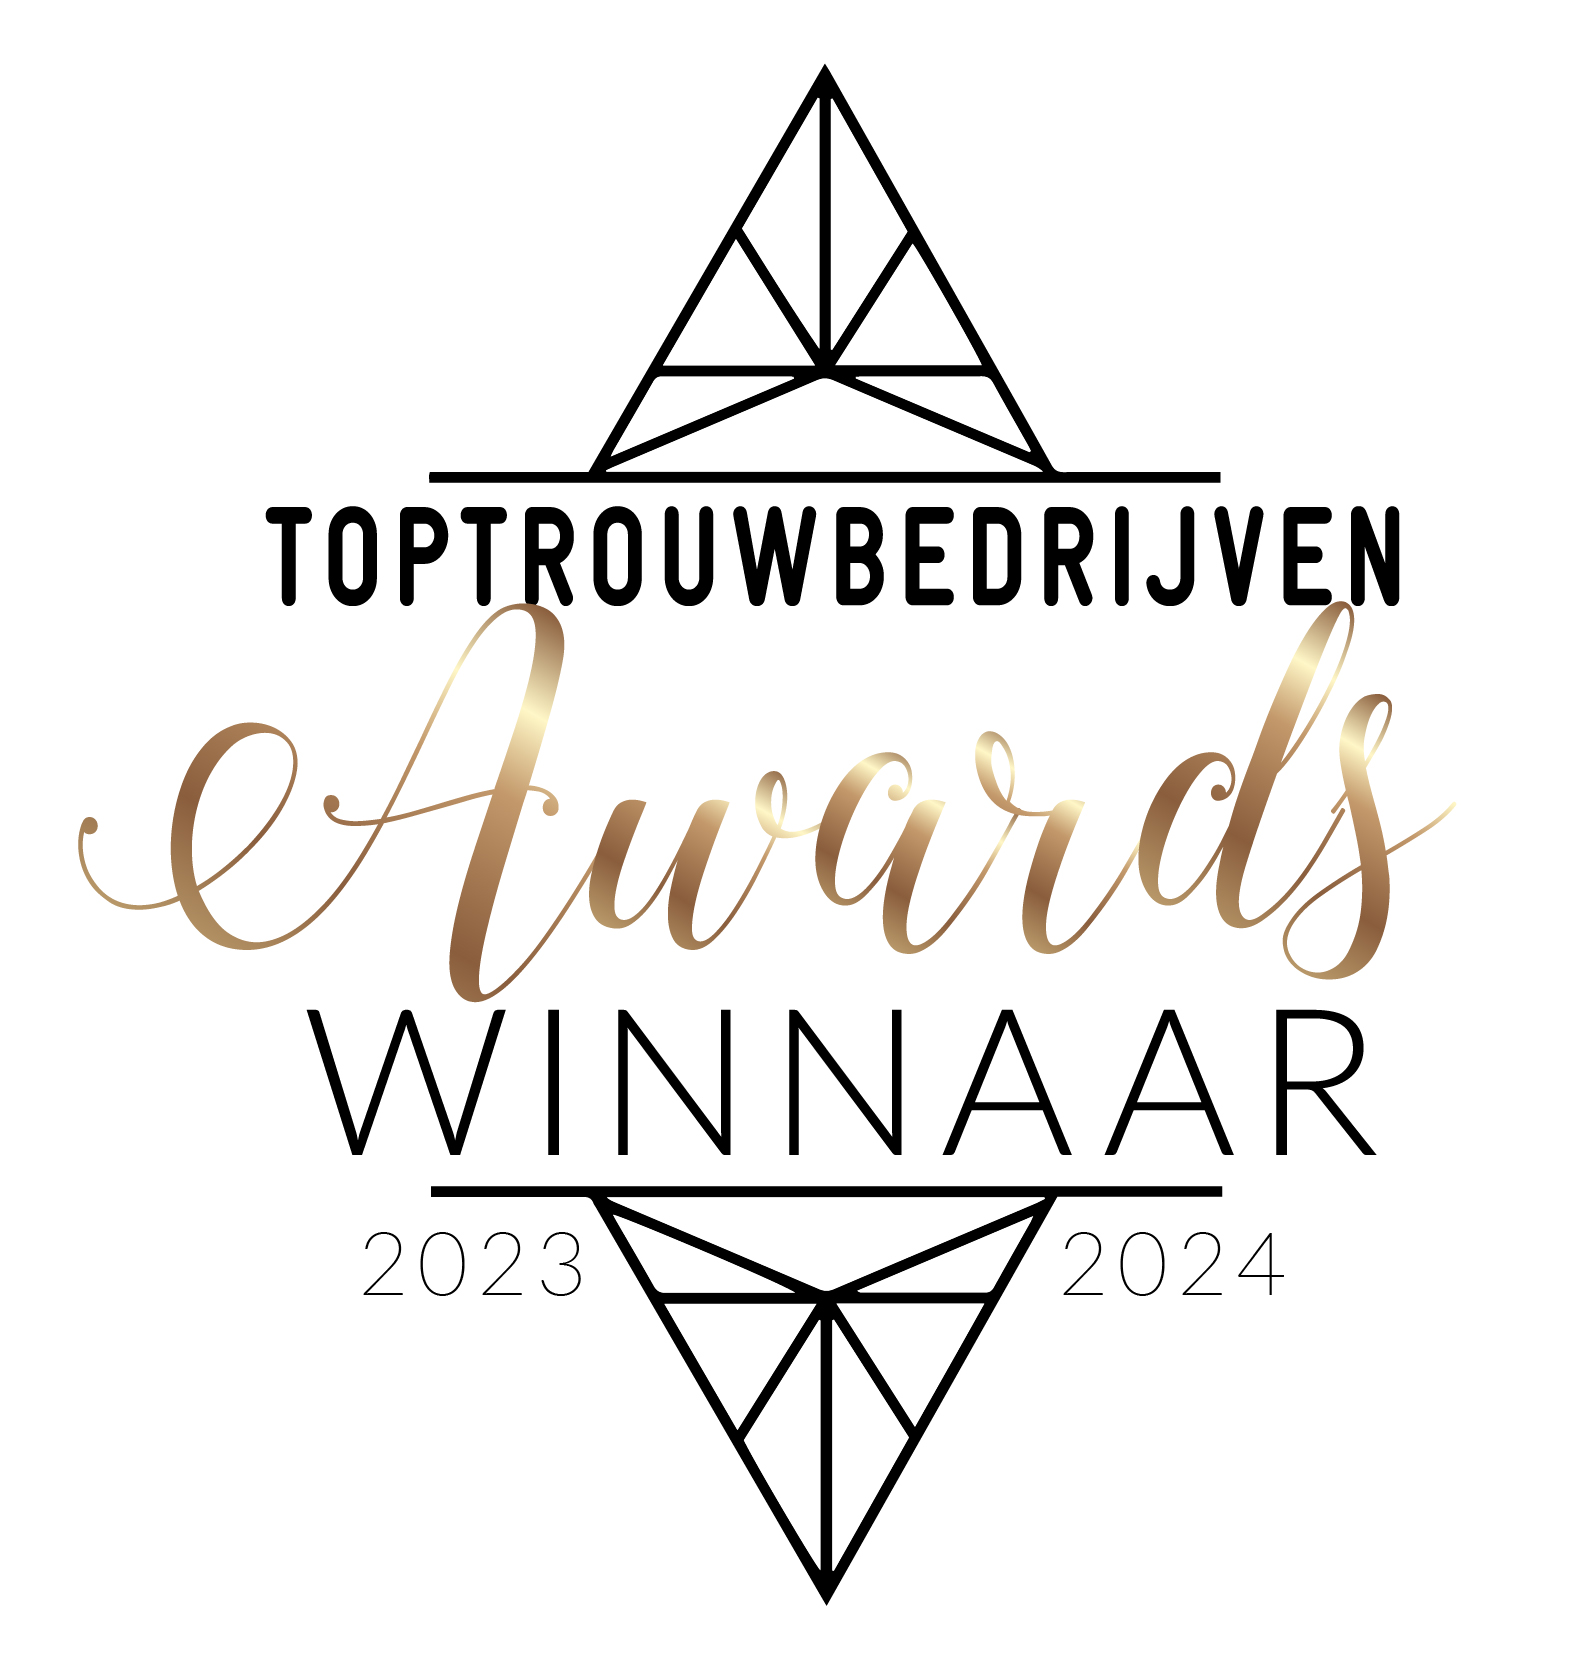 Rozenhof Trouwringen de winnaar van Toptrouwbedrijven Awards 2024 